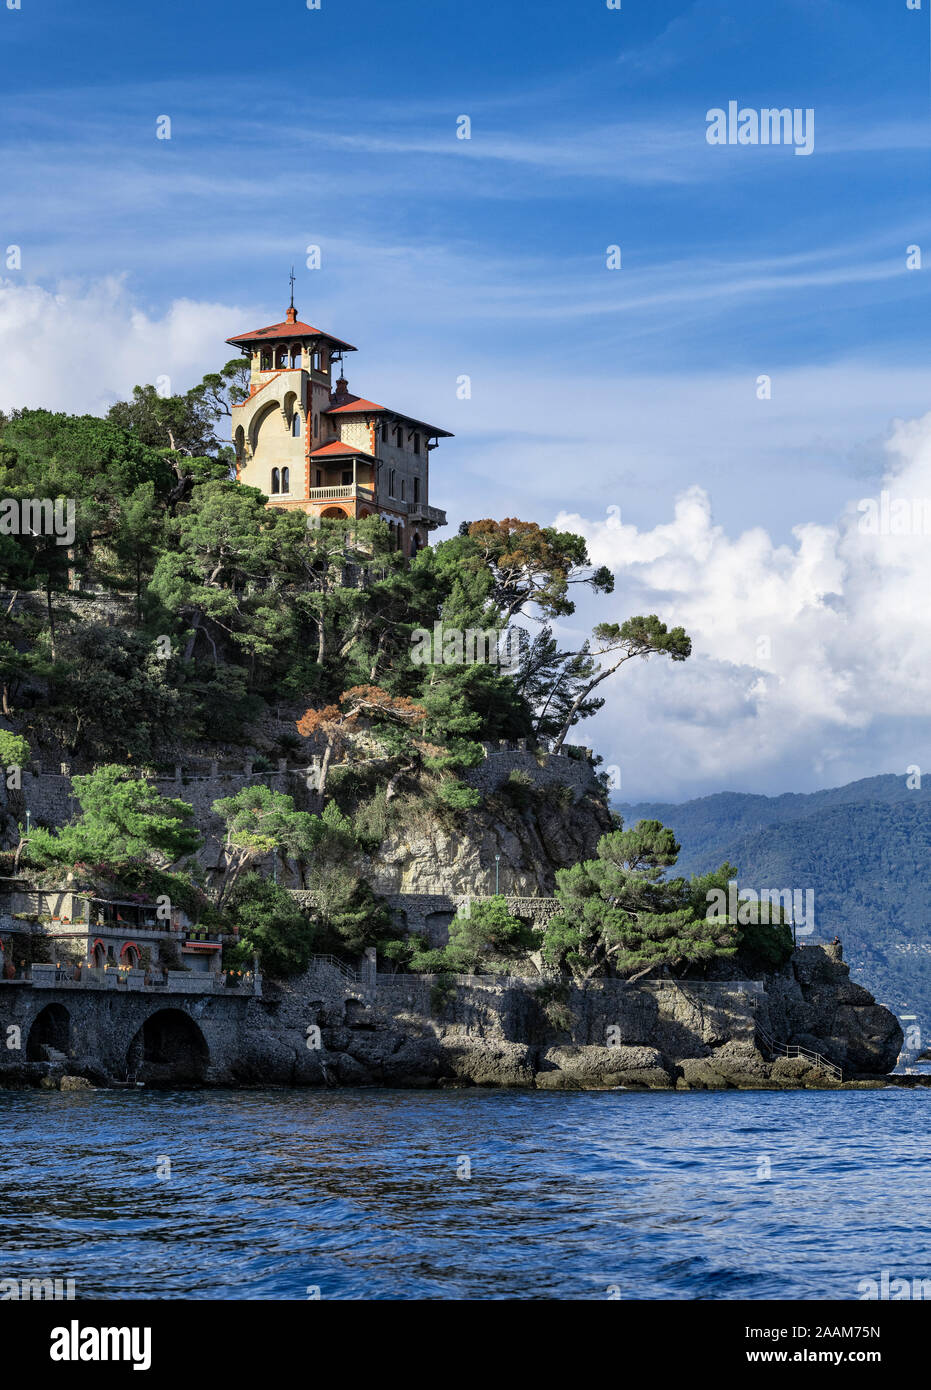 Casa in collina affacciato sulla baia di Portofino, Portofino Liguria, Italia. Foto Stock